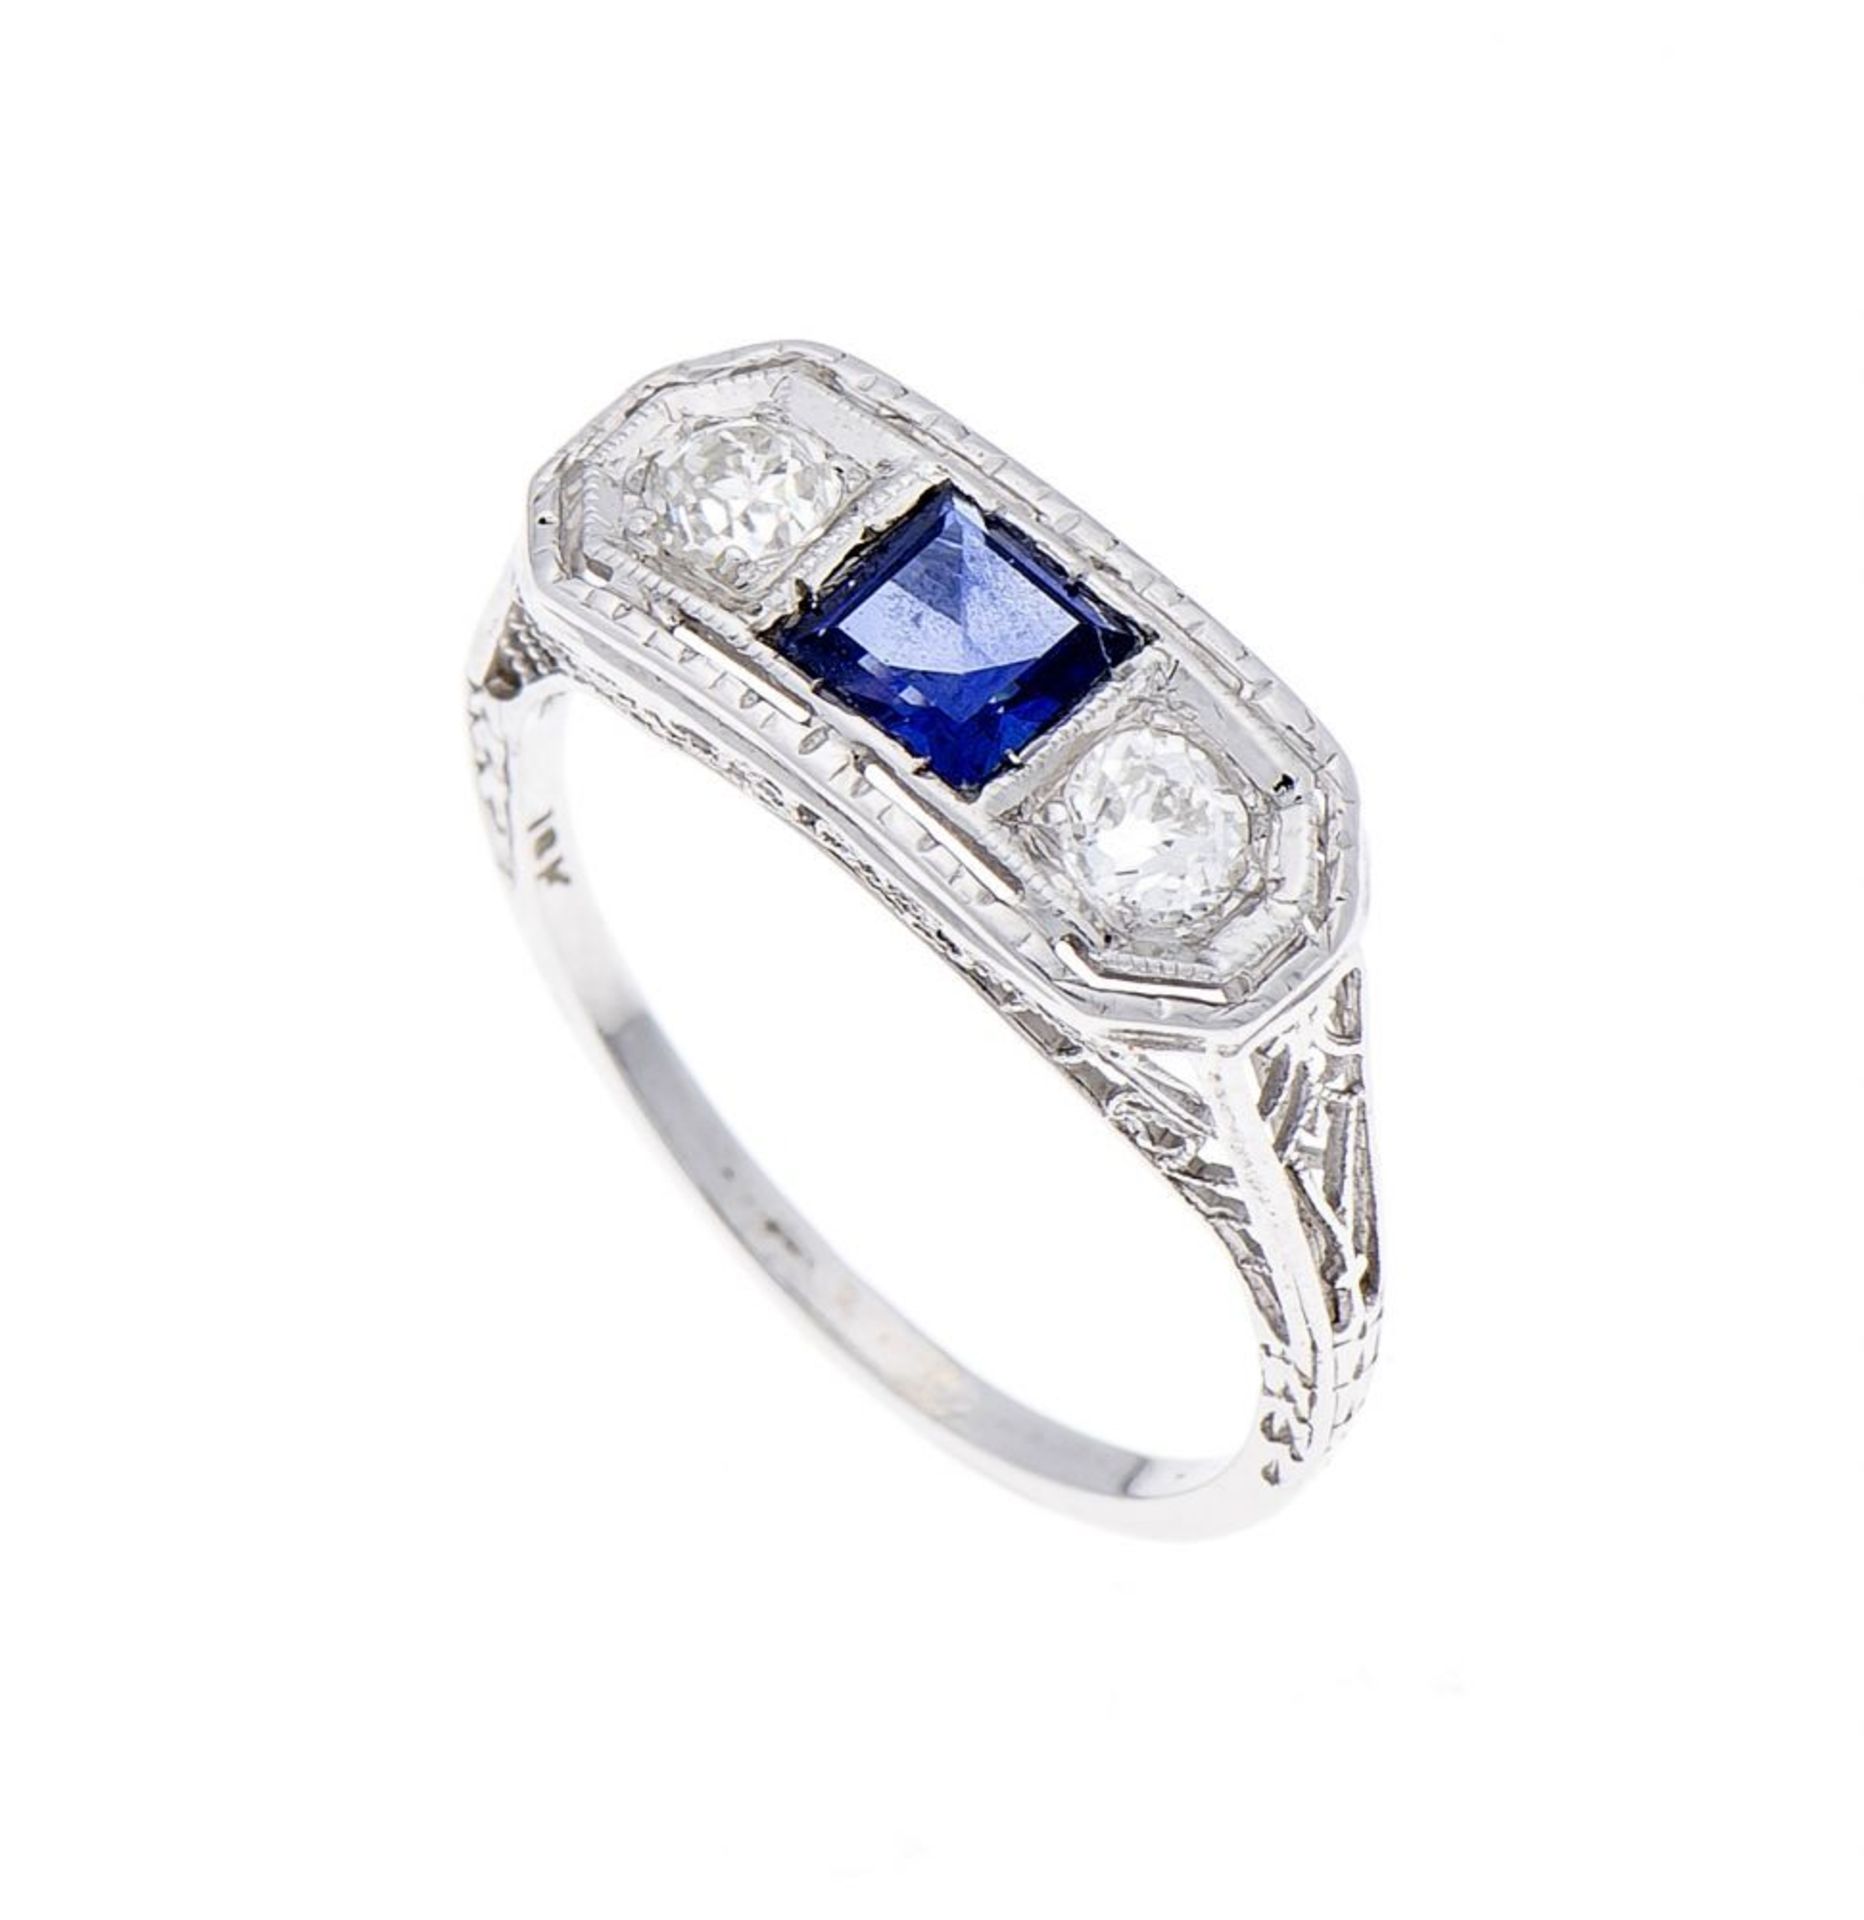 Saphir-Altschliff-Diamant-Ring WG 750/000 mit einem fac. Saphircarree 4 mm in sehr guter Farbe und 2